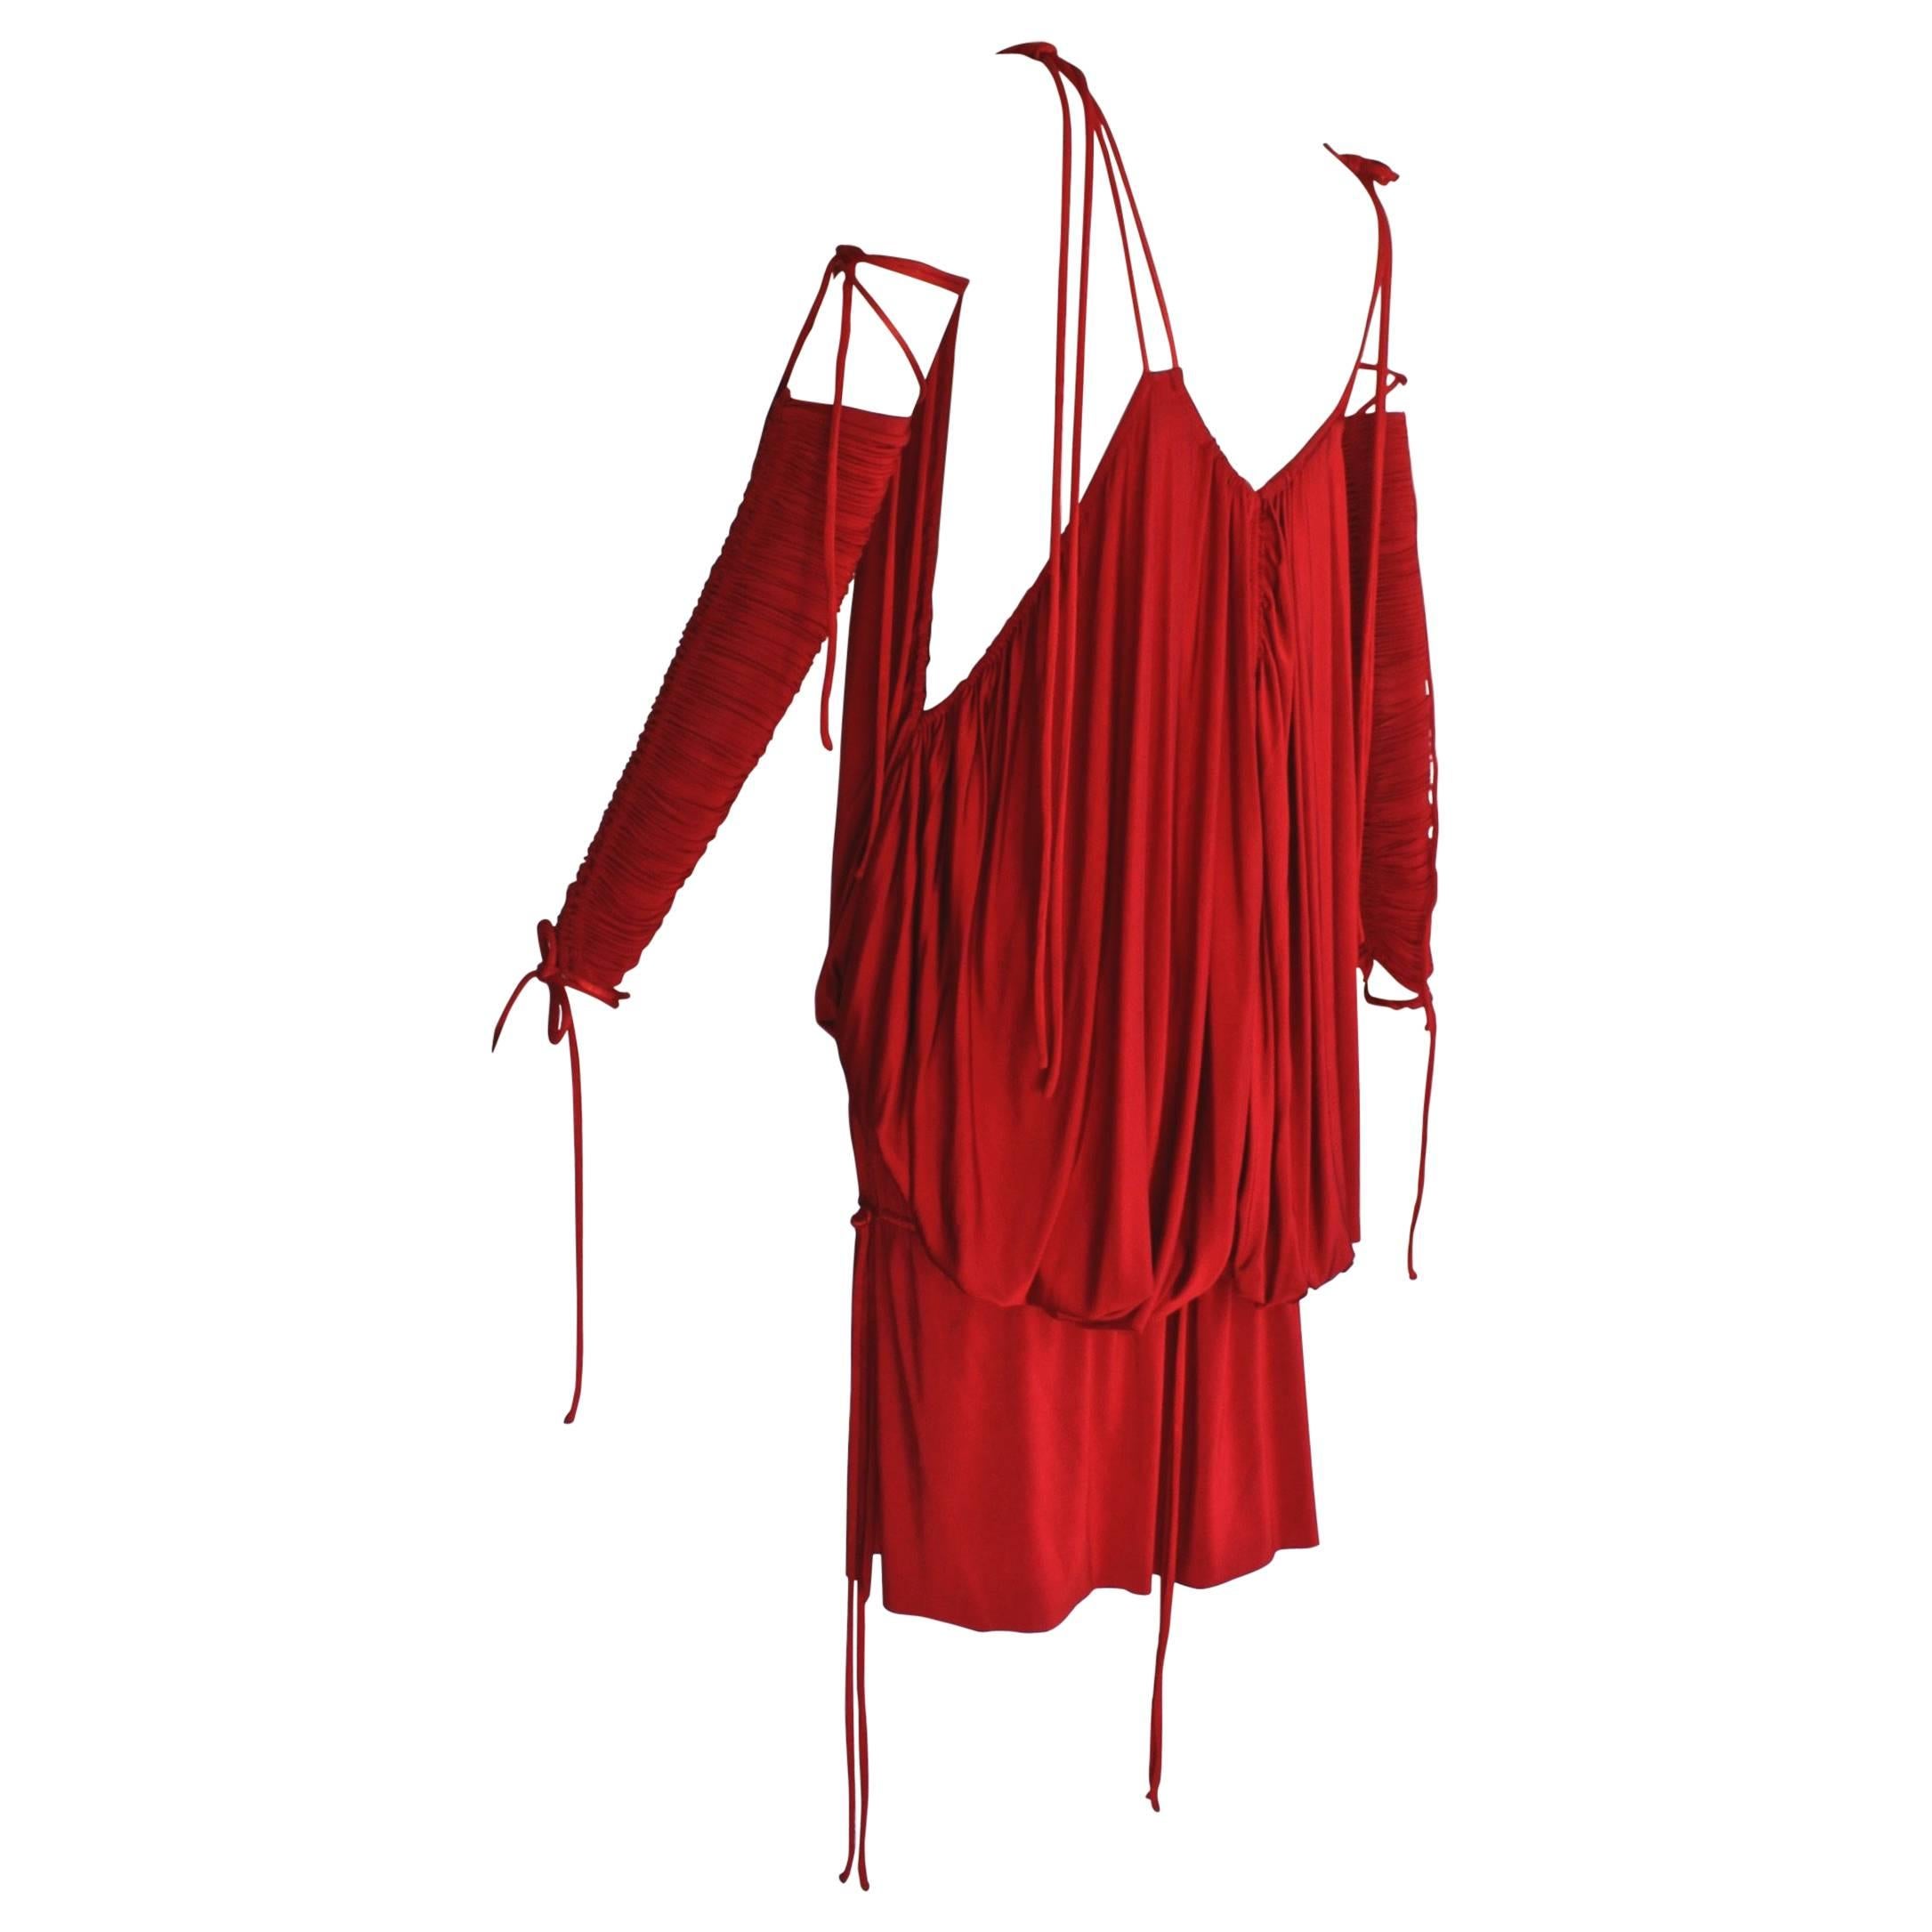 Rouge, dénudée et fluide, cette minirobe Dolce & Gabbana est conçue pour attirer l'attention. Lorsqu'il a fait ses débuts lors du défilé printemps/été 2003 sur le top model Gisele Bündchen, Sarah Mower de Vogue a écrit : 